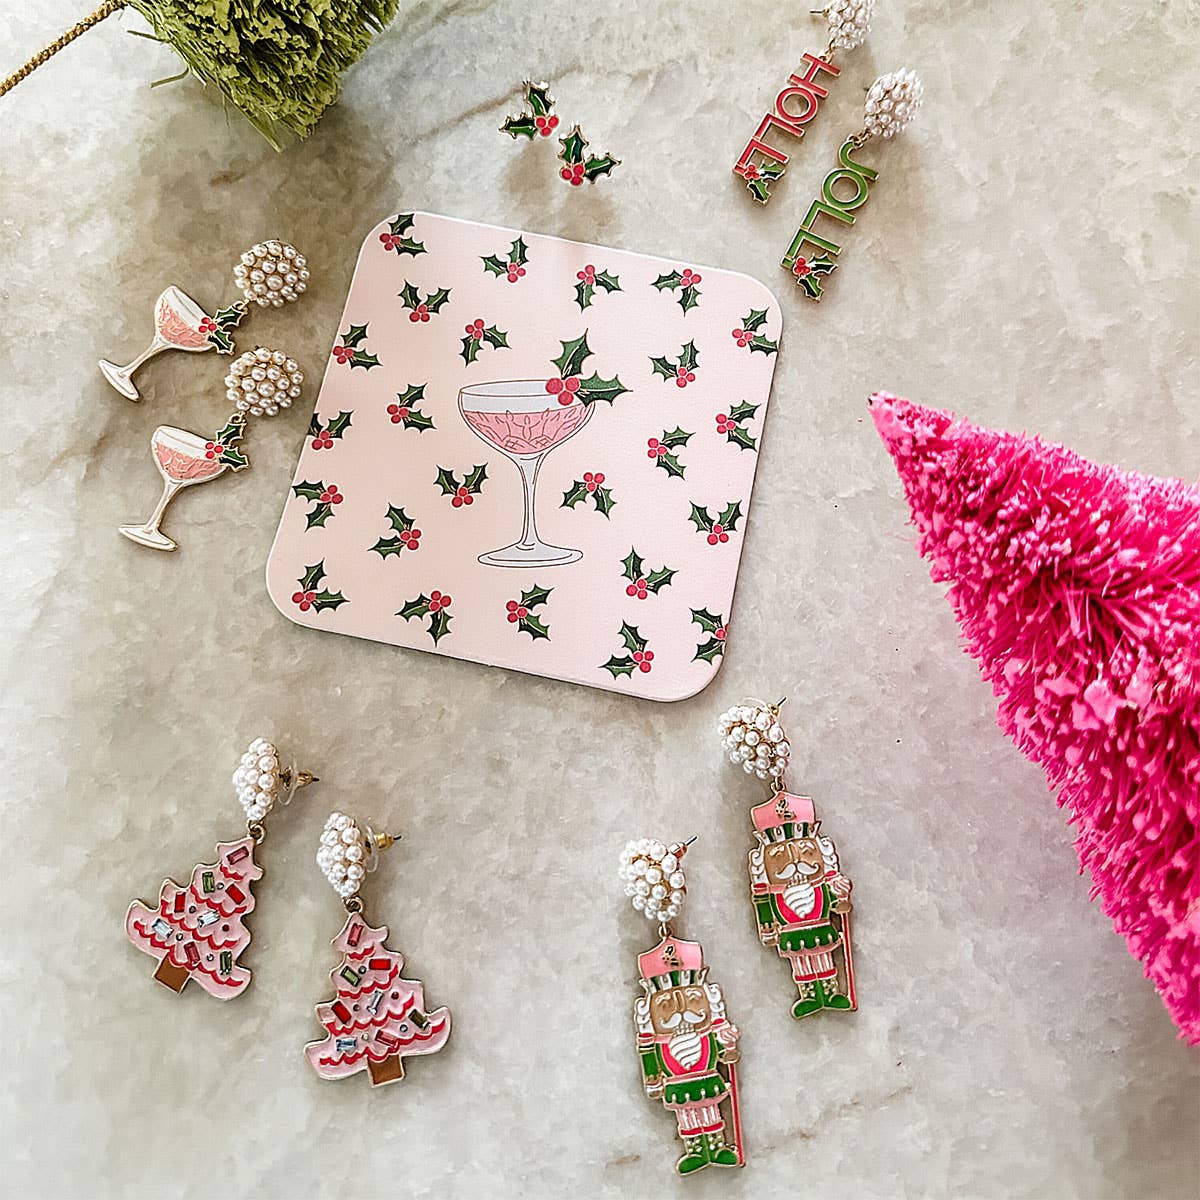 Nutcracker Enamel Earrings in Pink & Green - Pretty Crafty Lady Shop